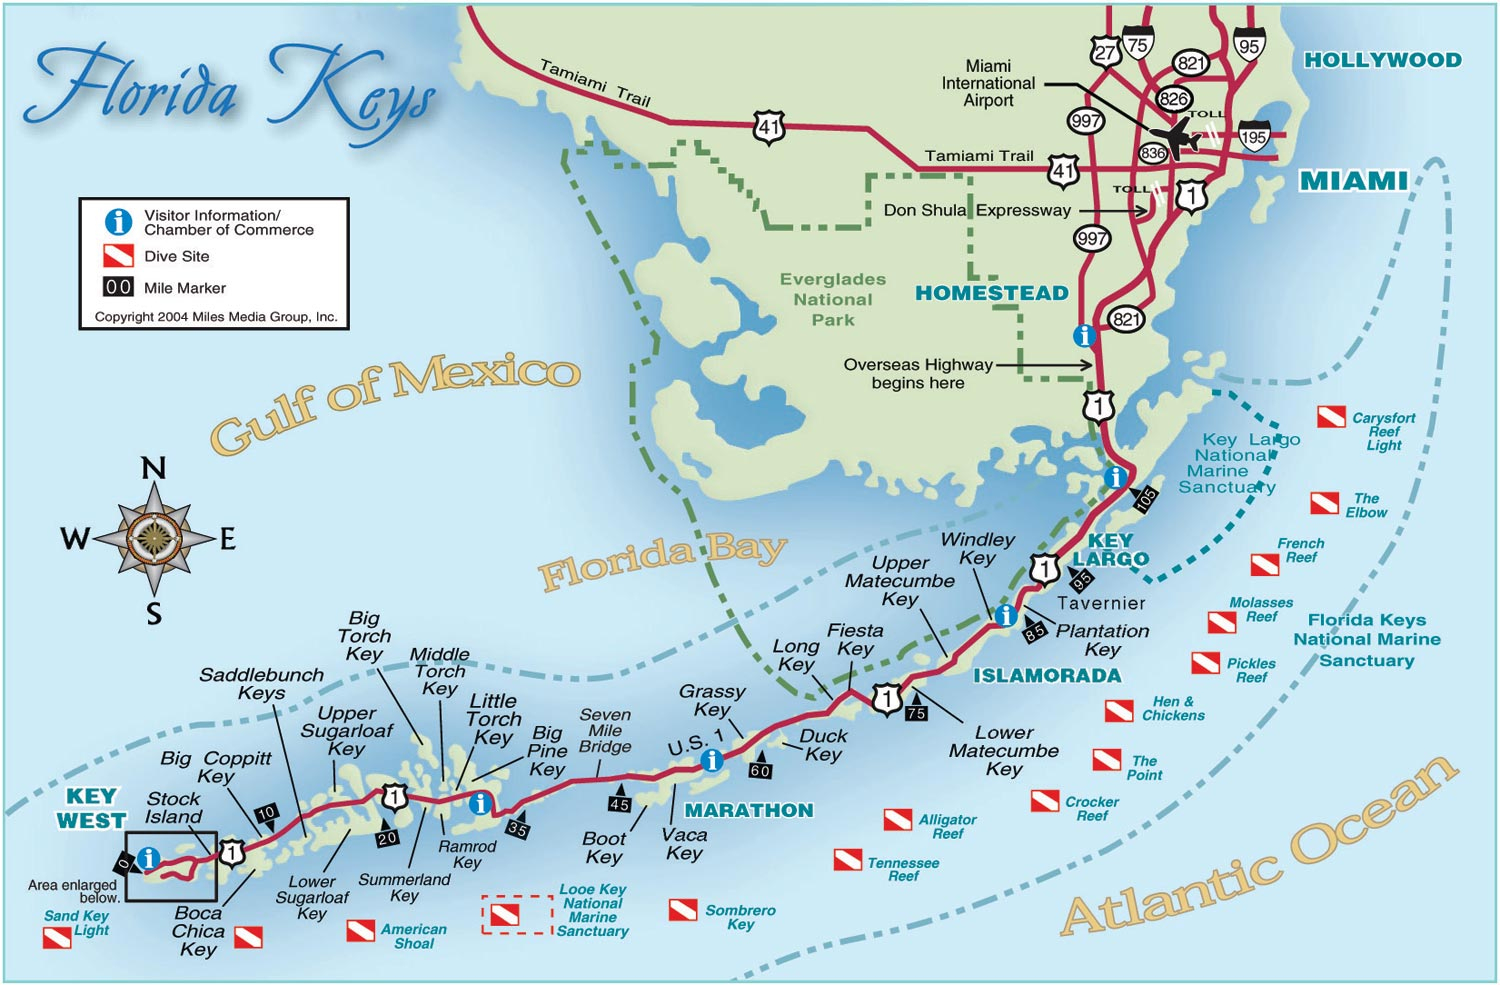 The Florida Keys Real Estate Conchquistador Keys Map Show Me A Map Of The Florida Keys 